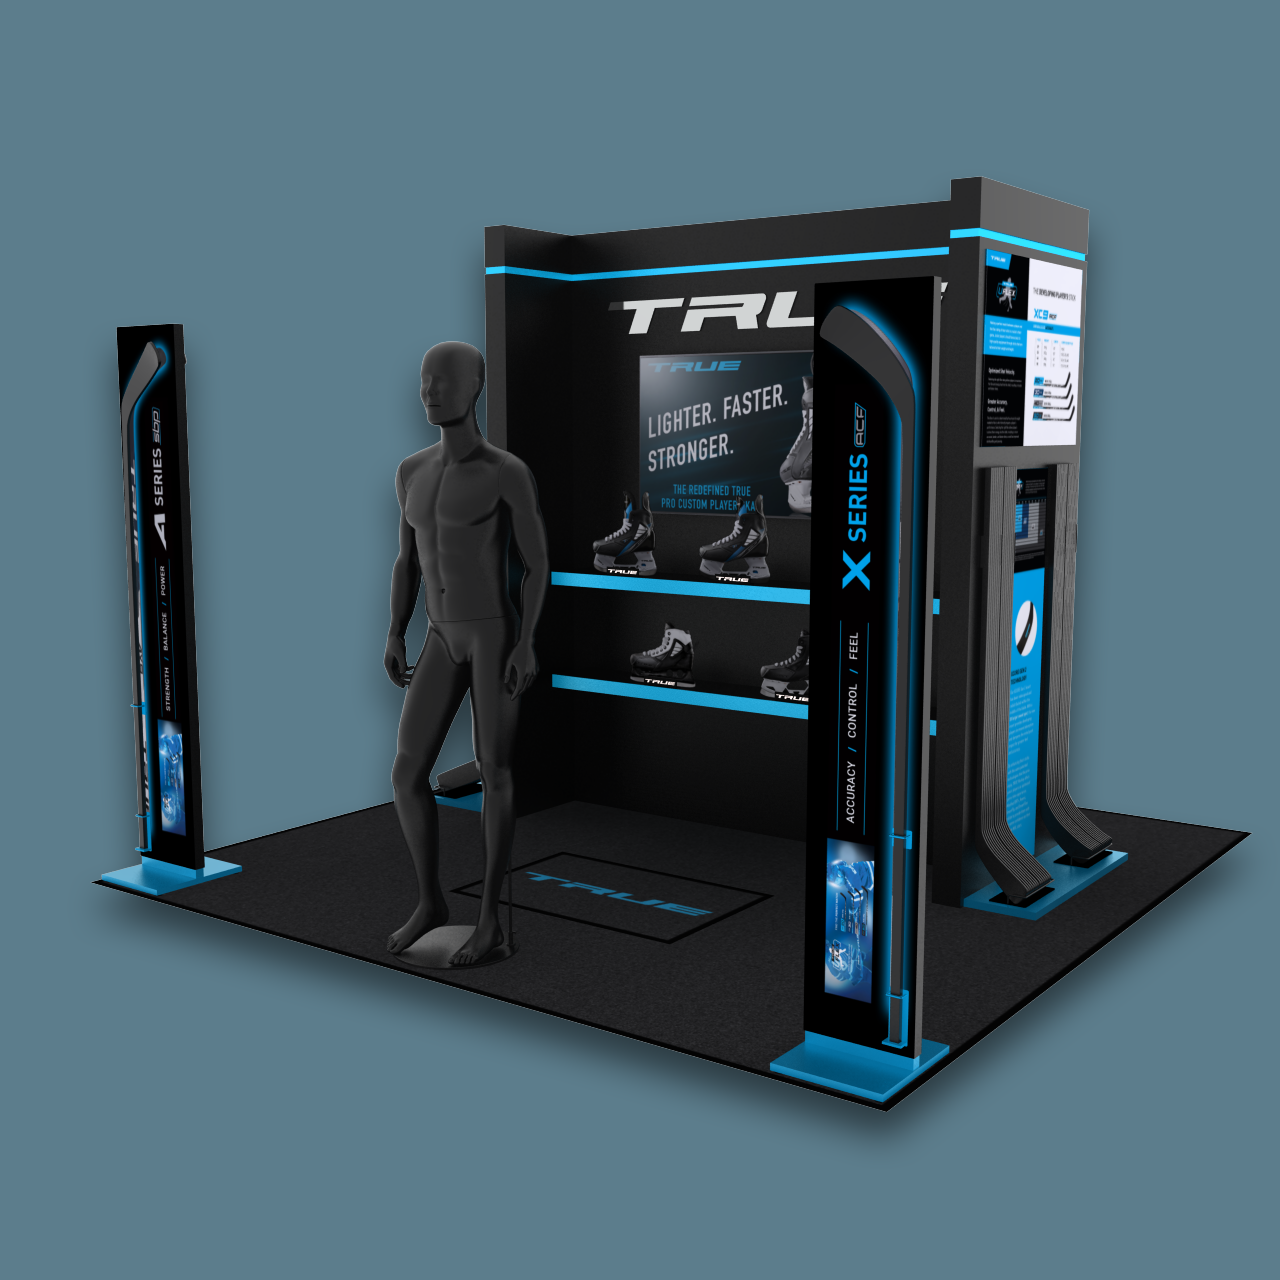 3D rendering of TRUE Hockey equipment in-store display